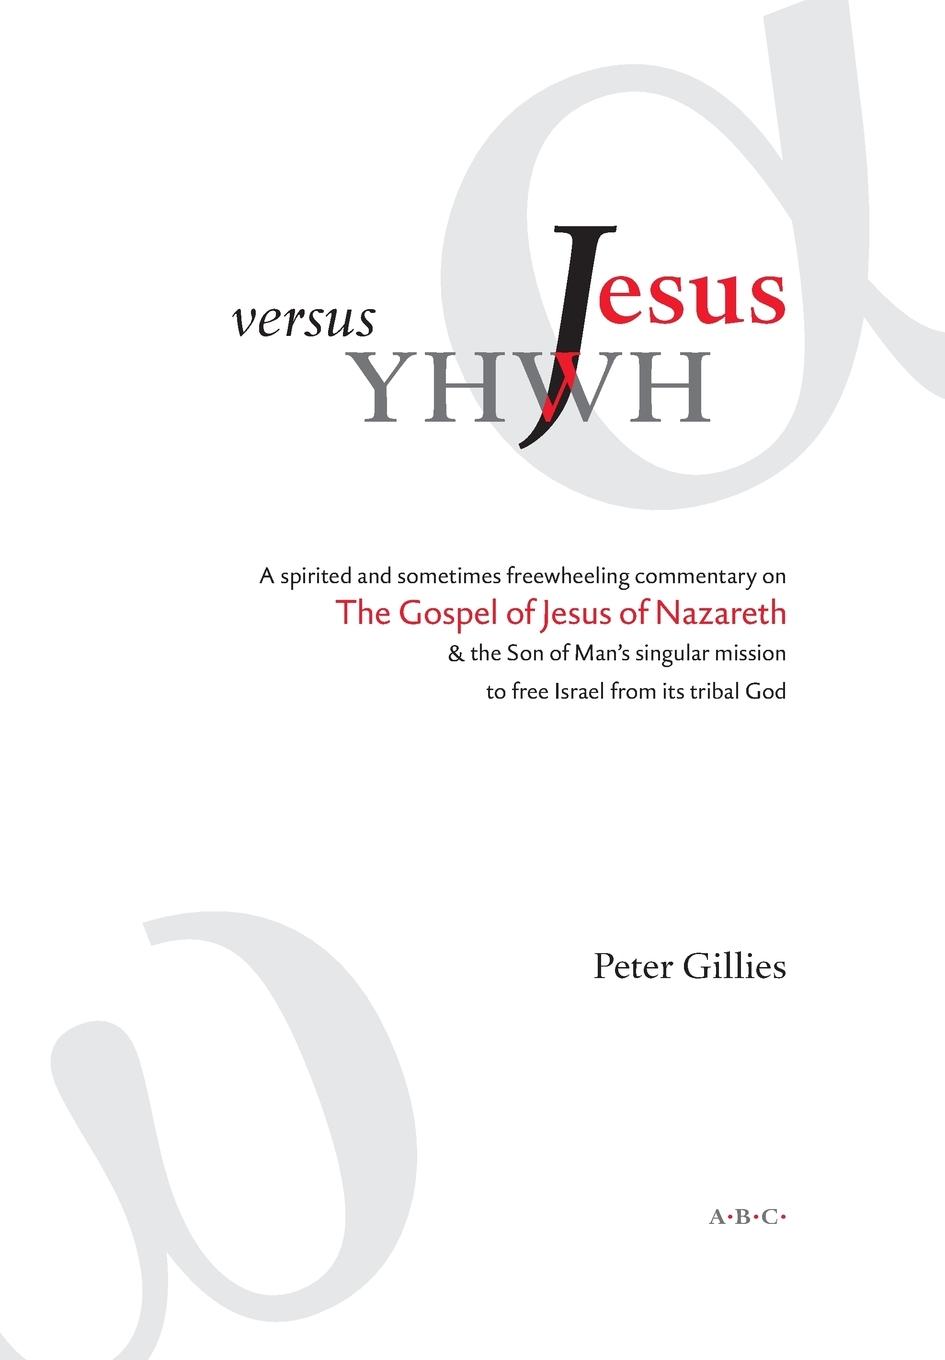 Carte Jesus versus YHWH Peter Gillies